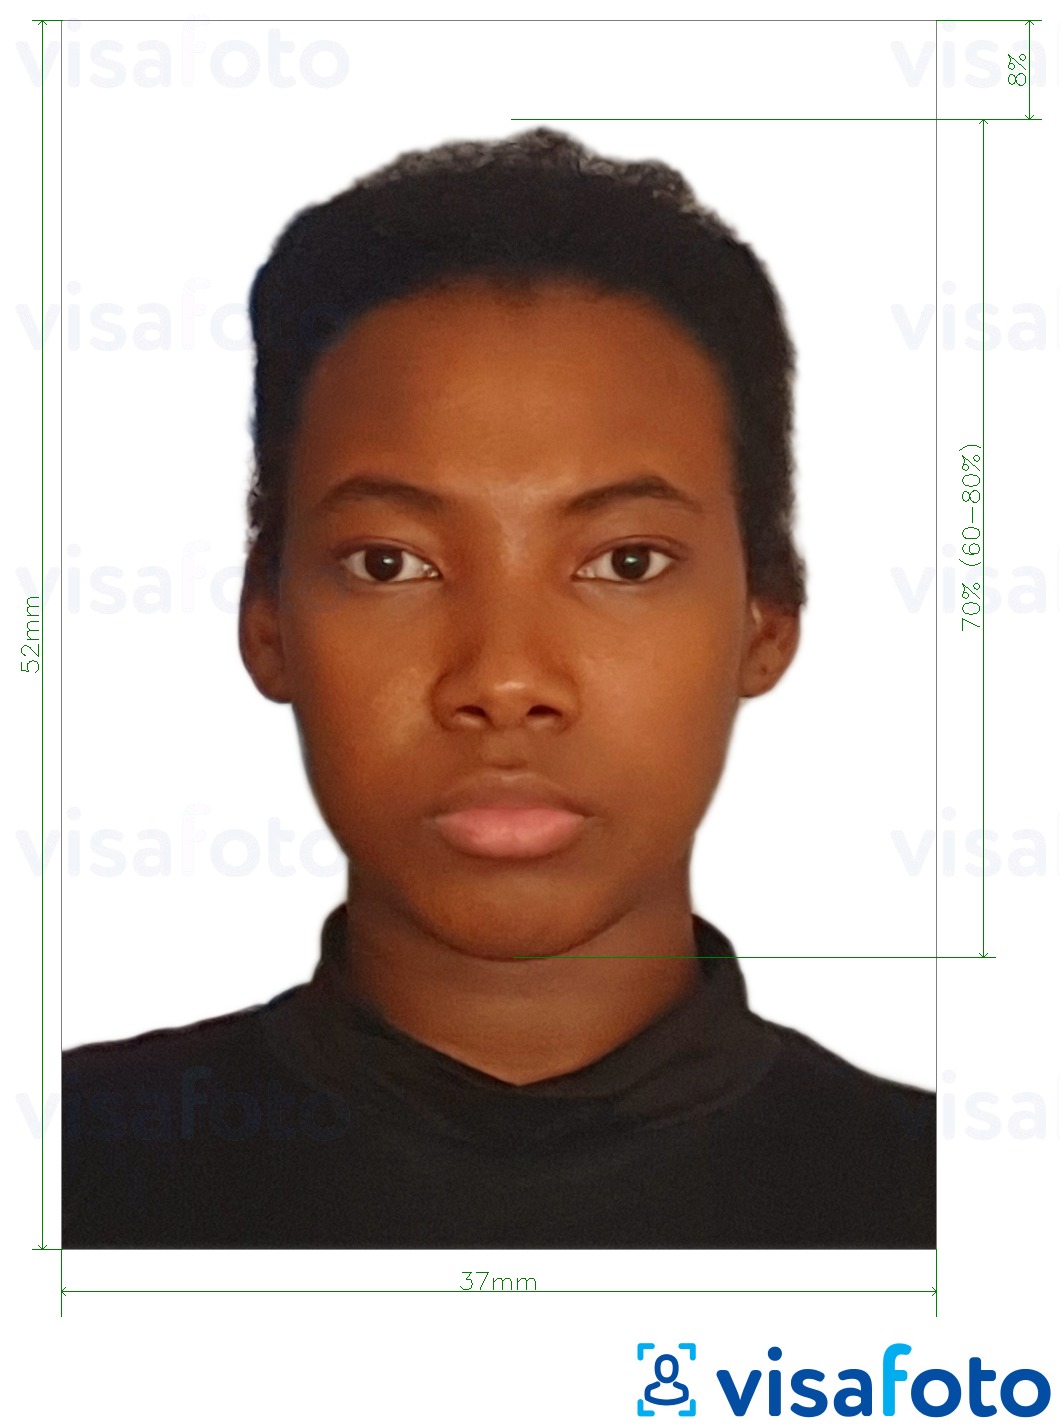 सटीक आकार विनिर्देश के साथ नामीबिया पासपोर्ट 37x52 मिमी (3.7x5.2 सेमी) के लिए तस्वीर का उदाहरण